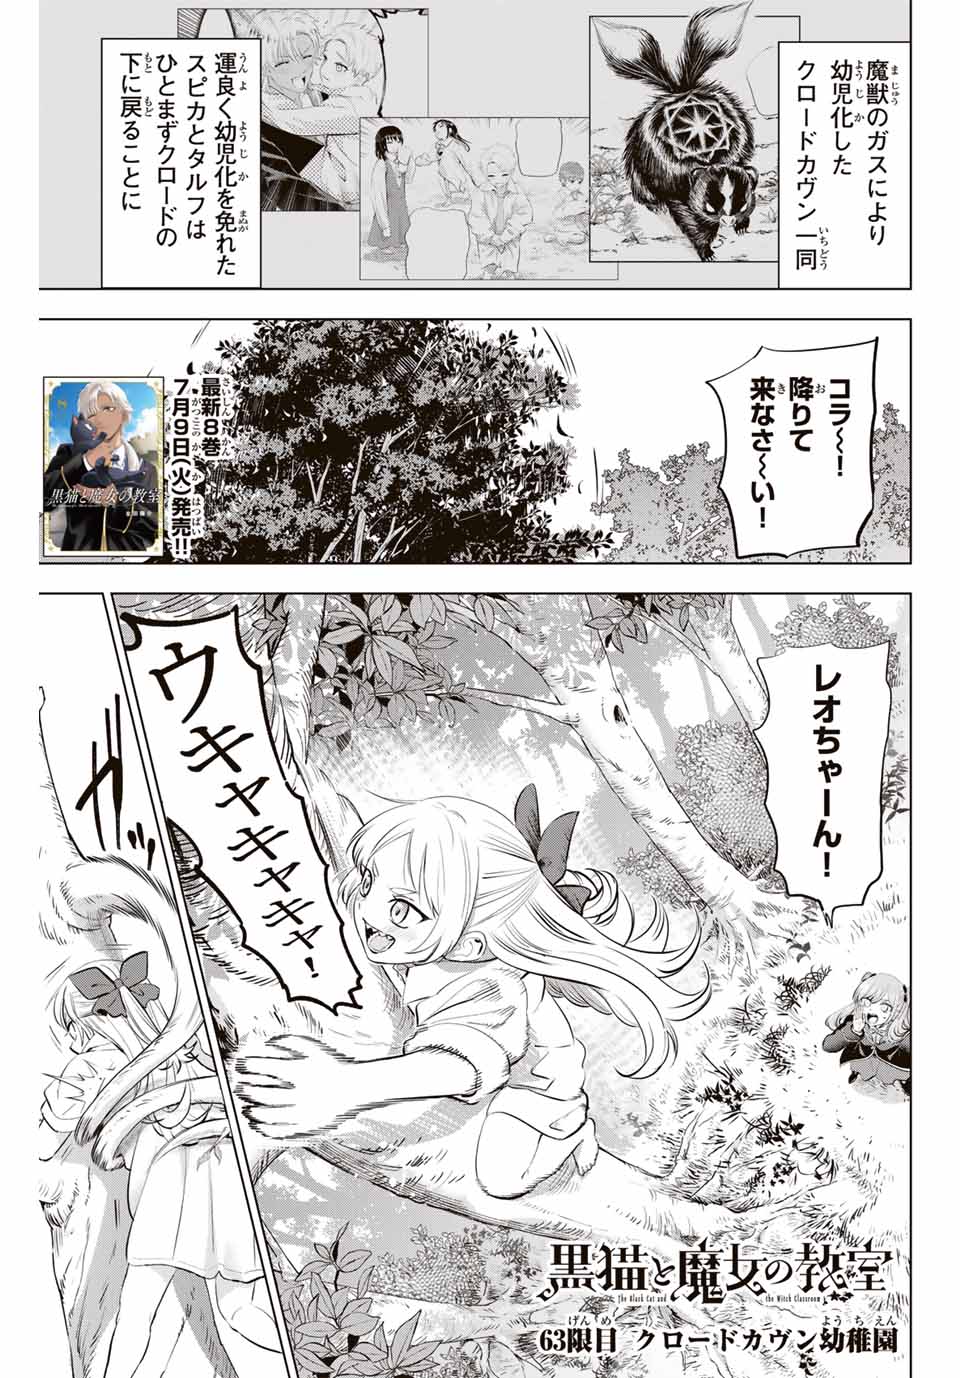 Kuroneko to Majo no Kyoushitsu - Chapter 63 - Page 1